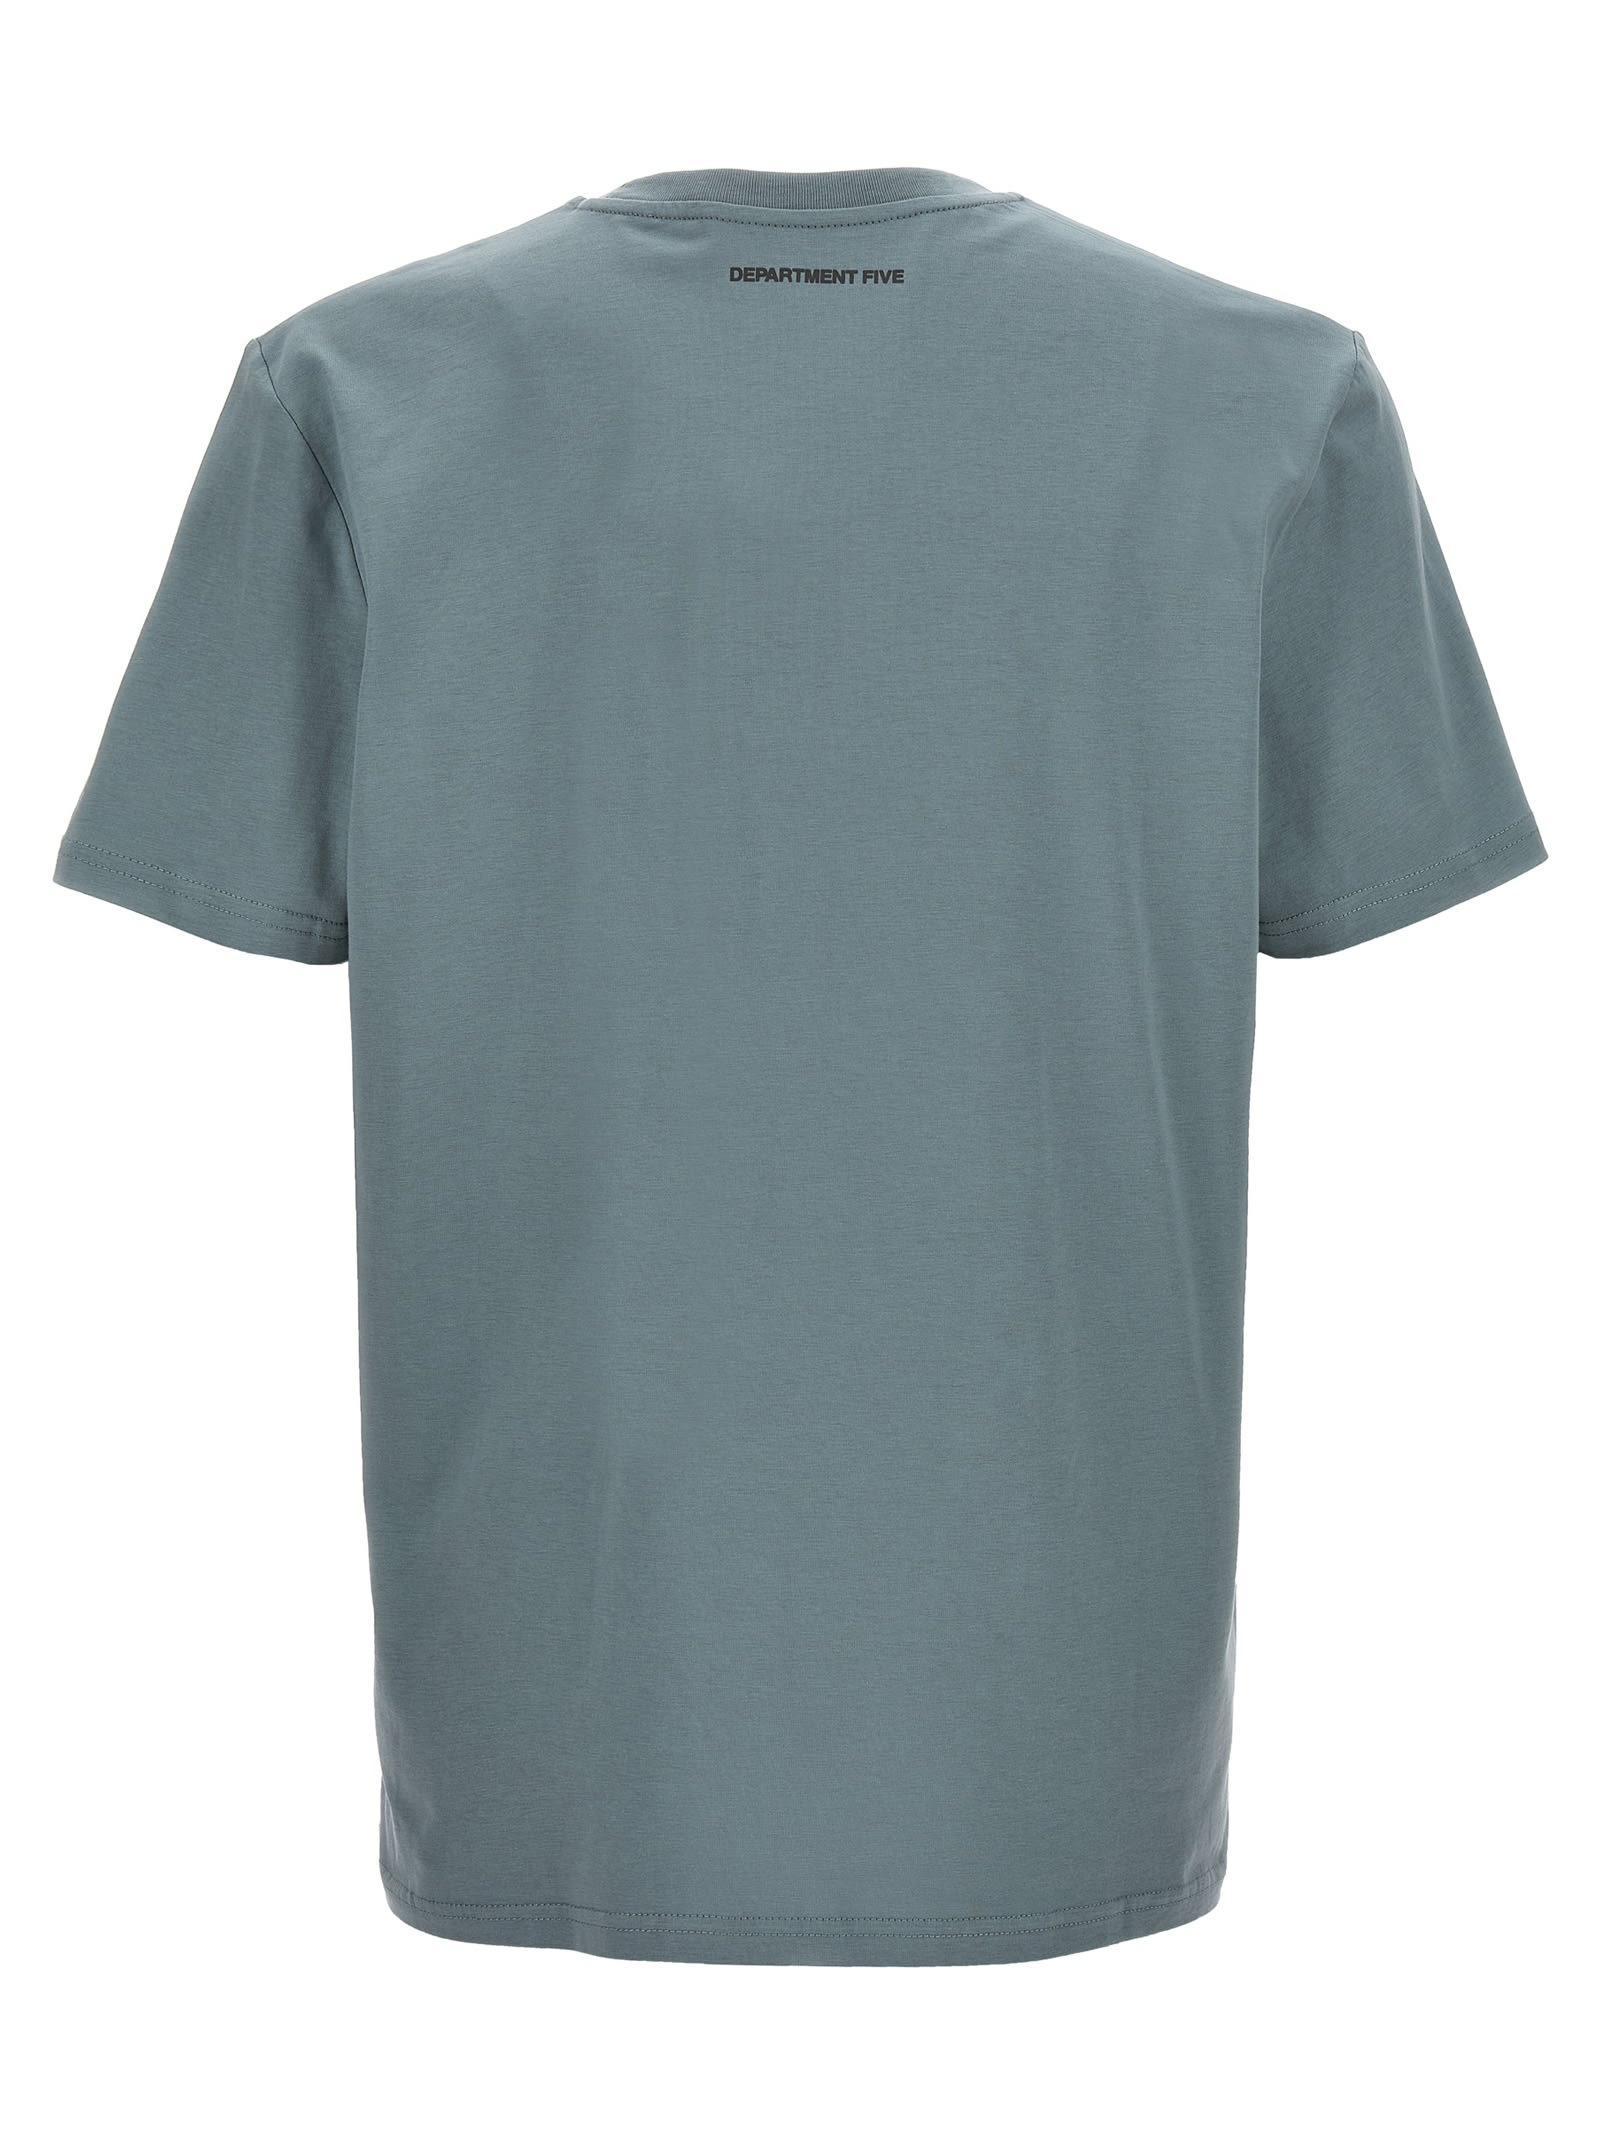 Shop Department Five Cesar T-shirt In Light Blue